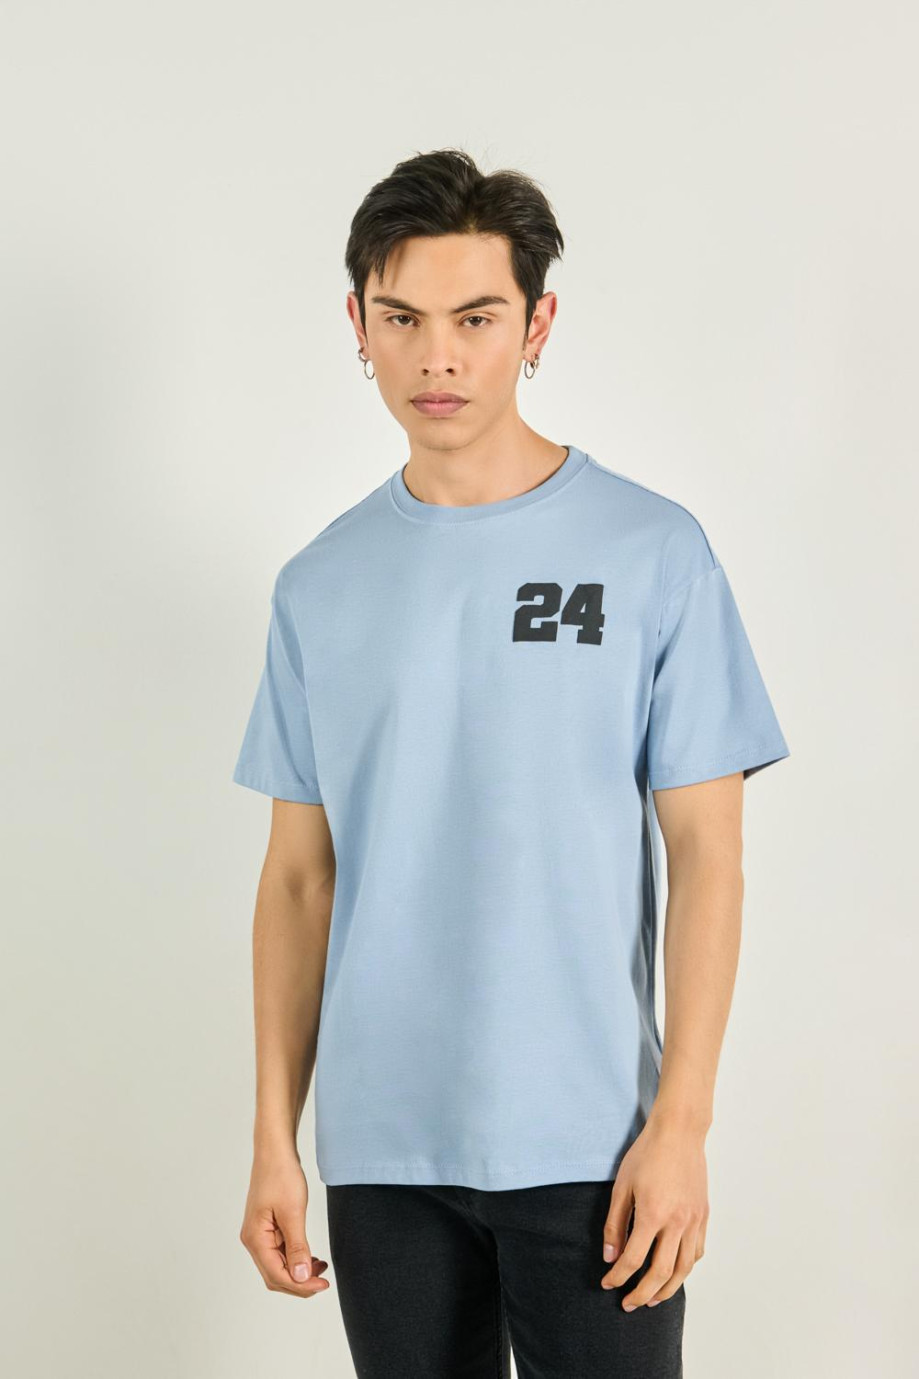 Camiseta azul con diseño college numérico y manga corta